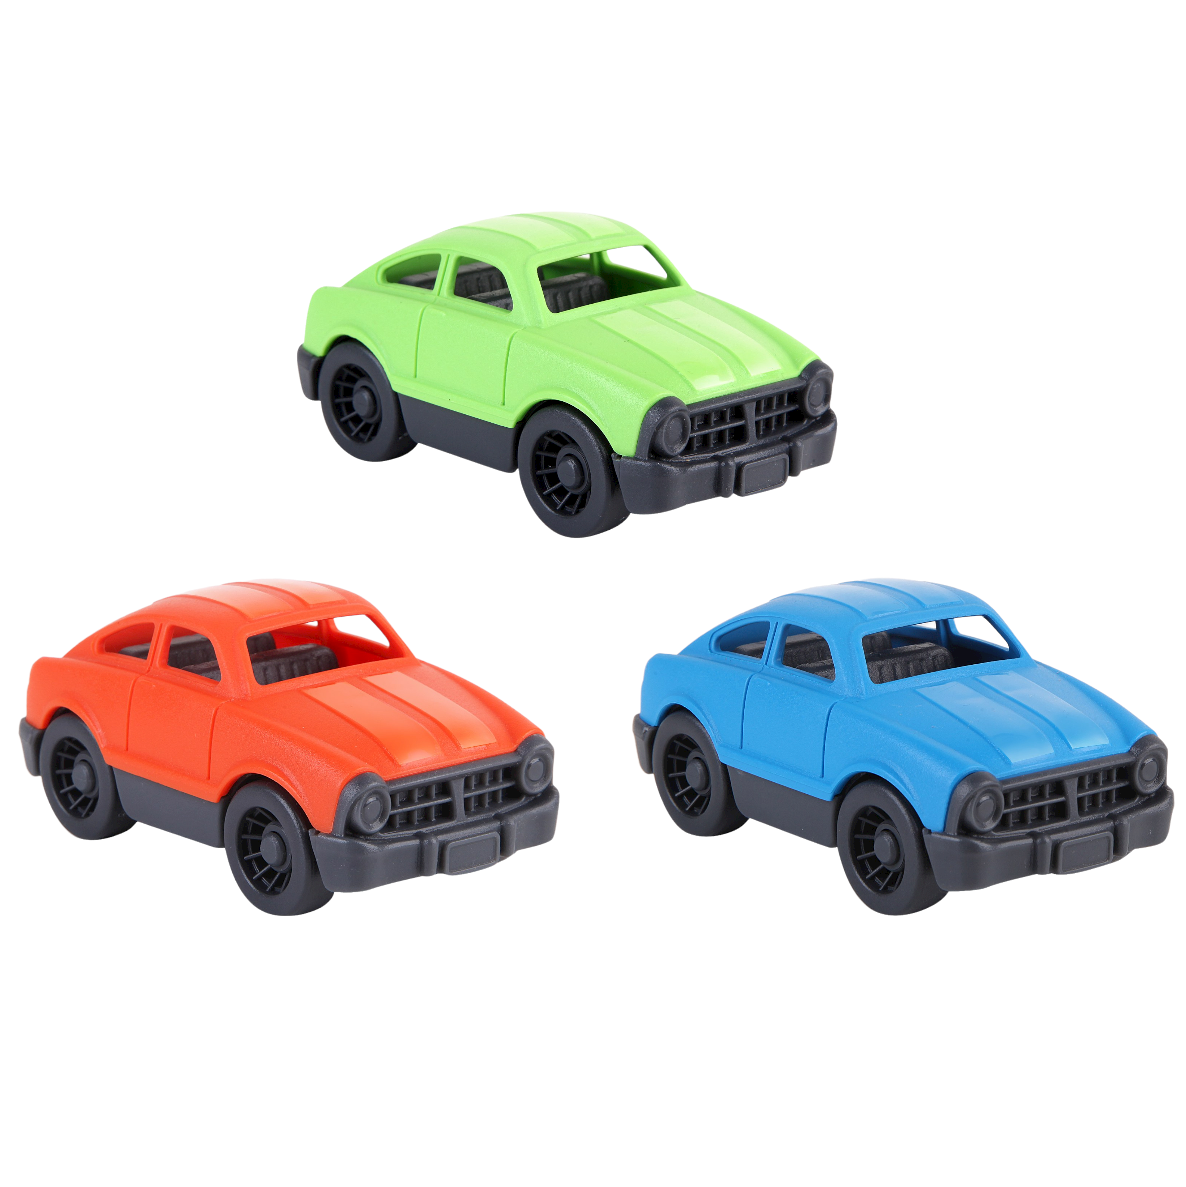 Let's Be Child - Green-Orange-Blue Mini Cars (3pcs)